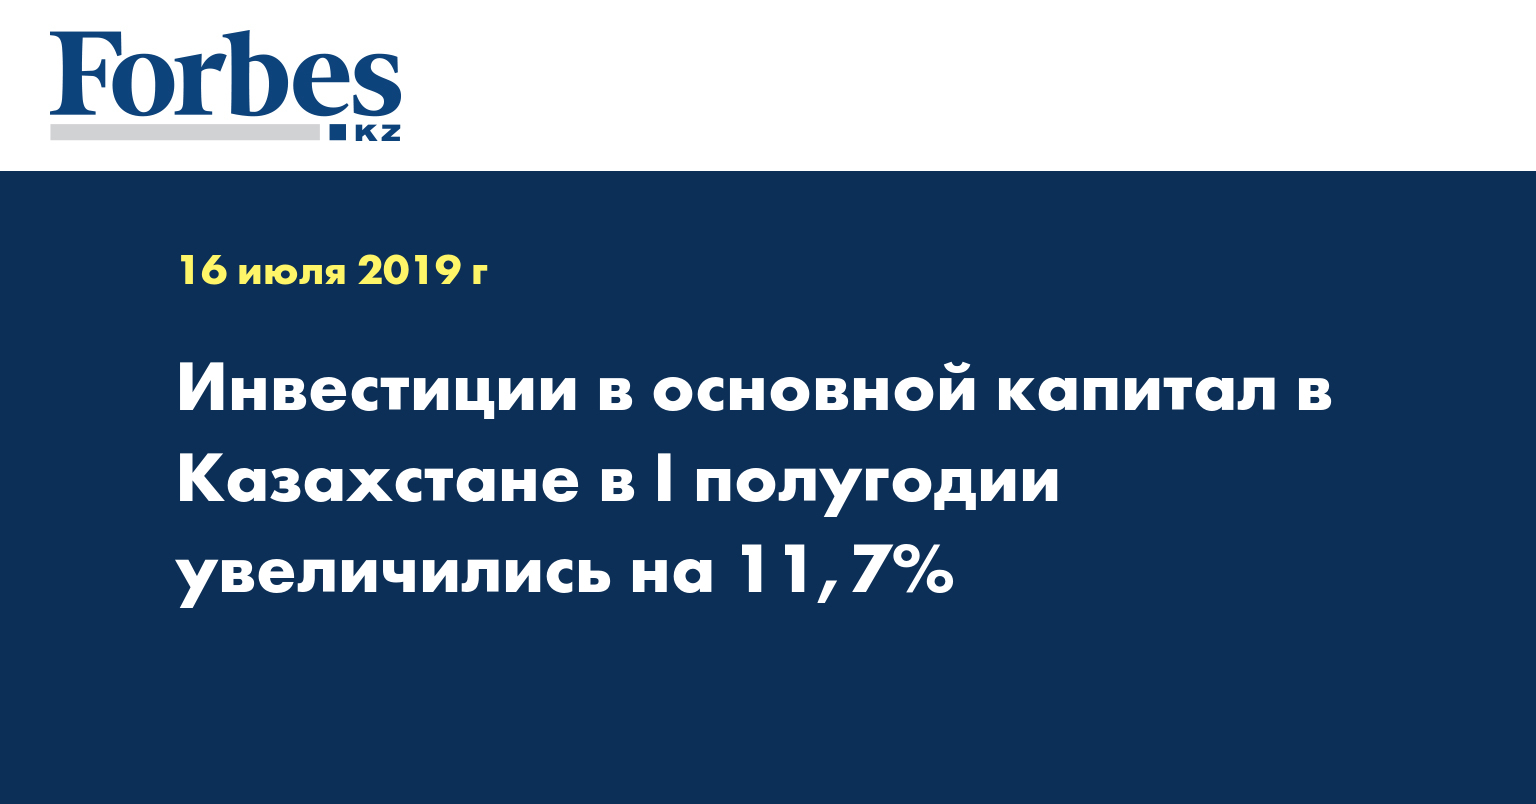 Инвестиции в основной капитал в Казахстане в I полугодии увеличились на 11,7%